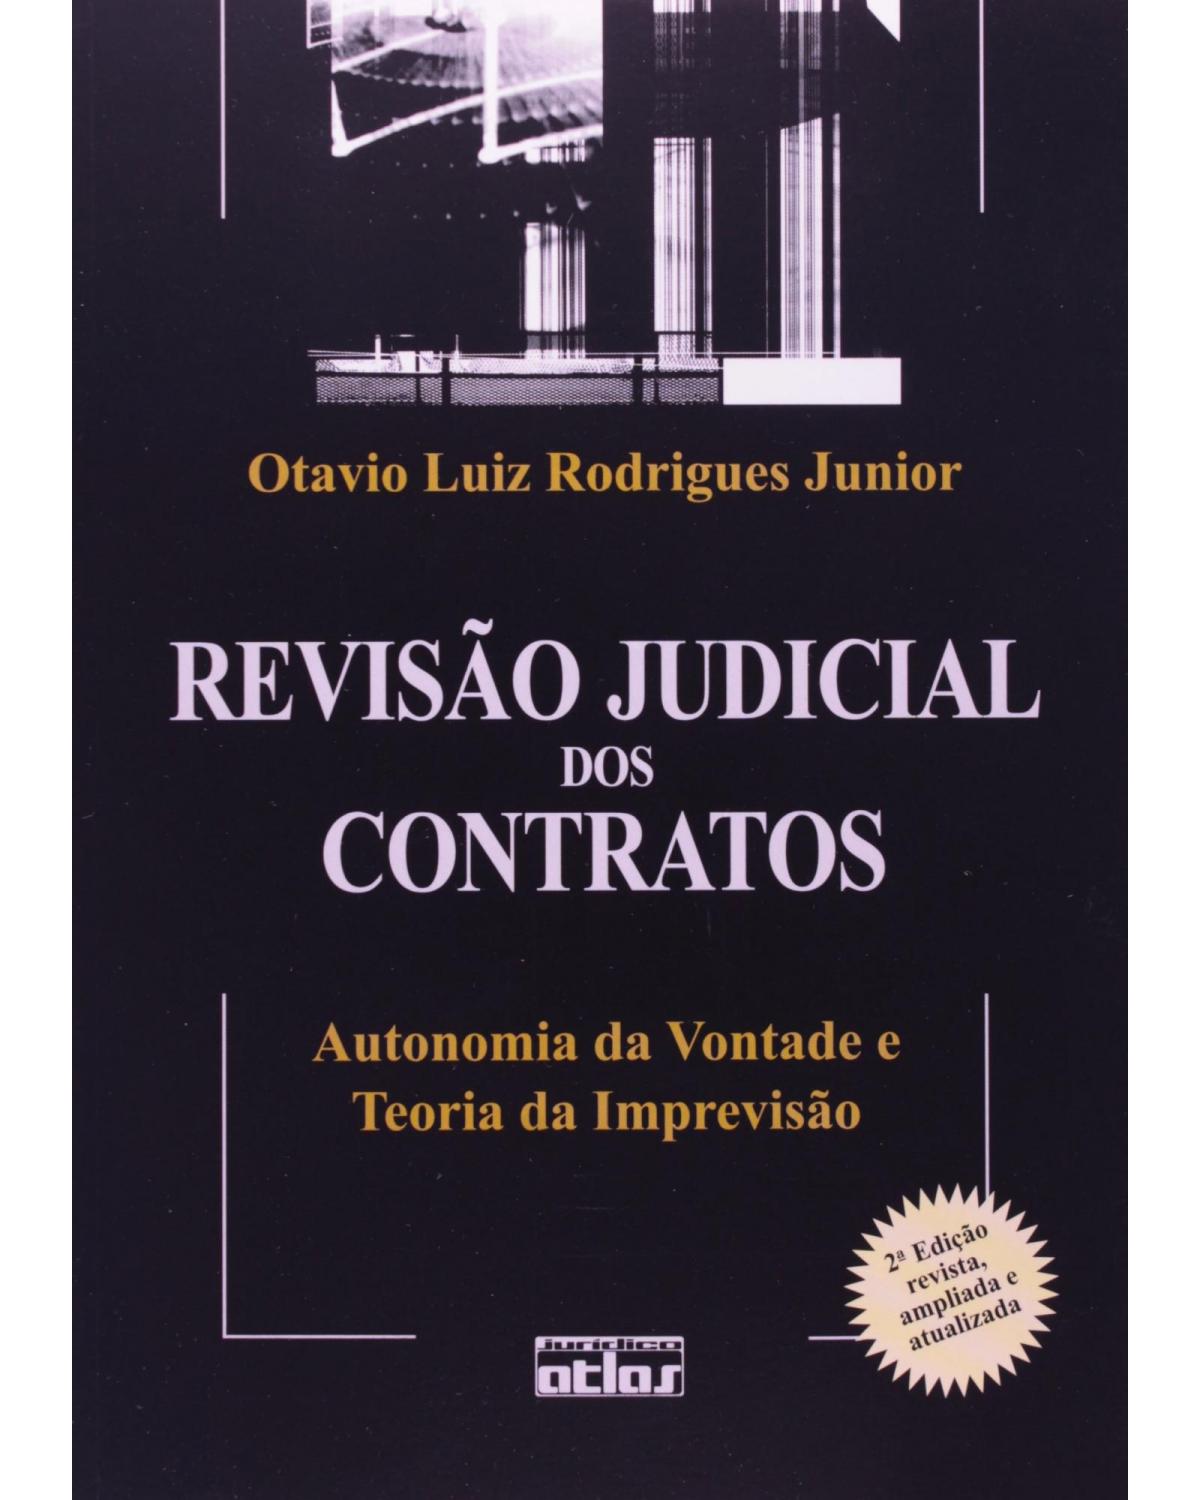 Revisão judicial dos contratos - Autonomia da vontade e teoria da imprevisão - 2ª Edição | 2006